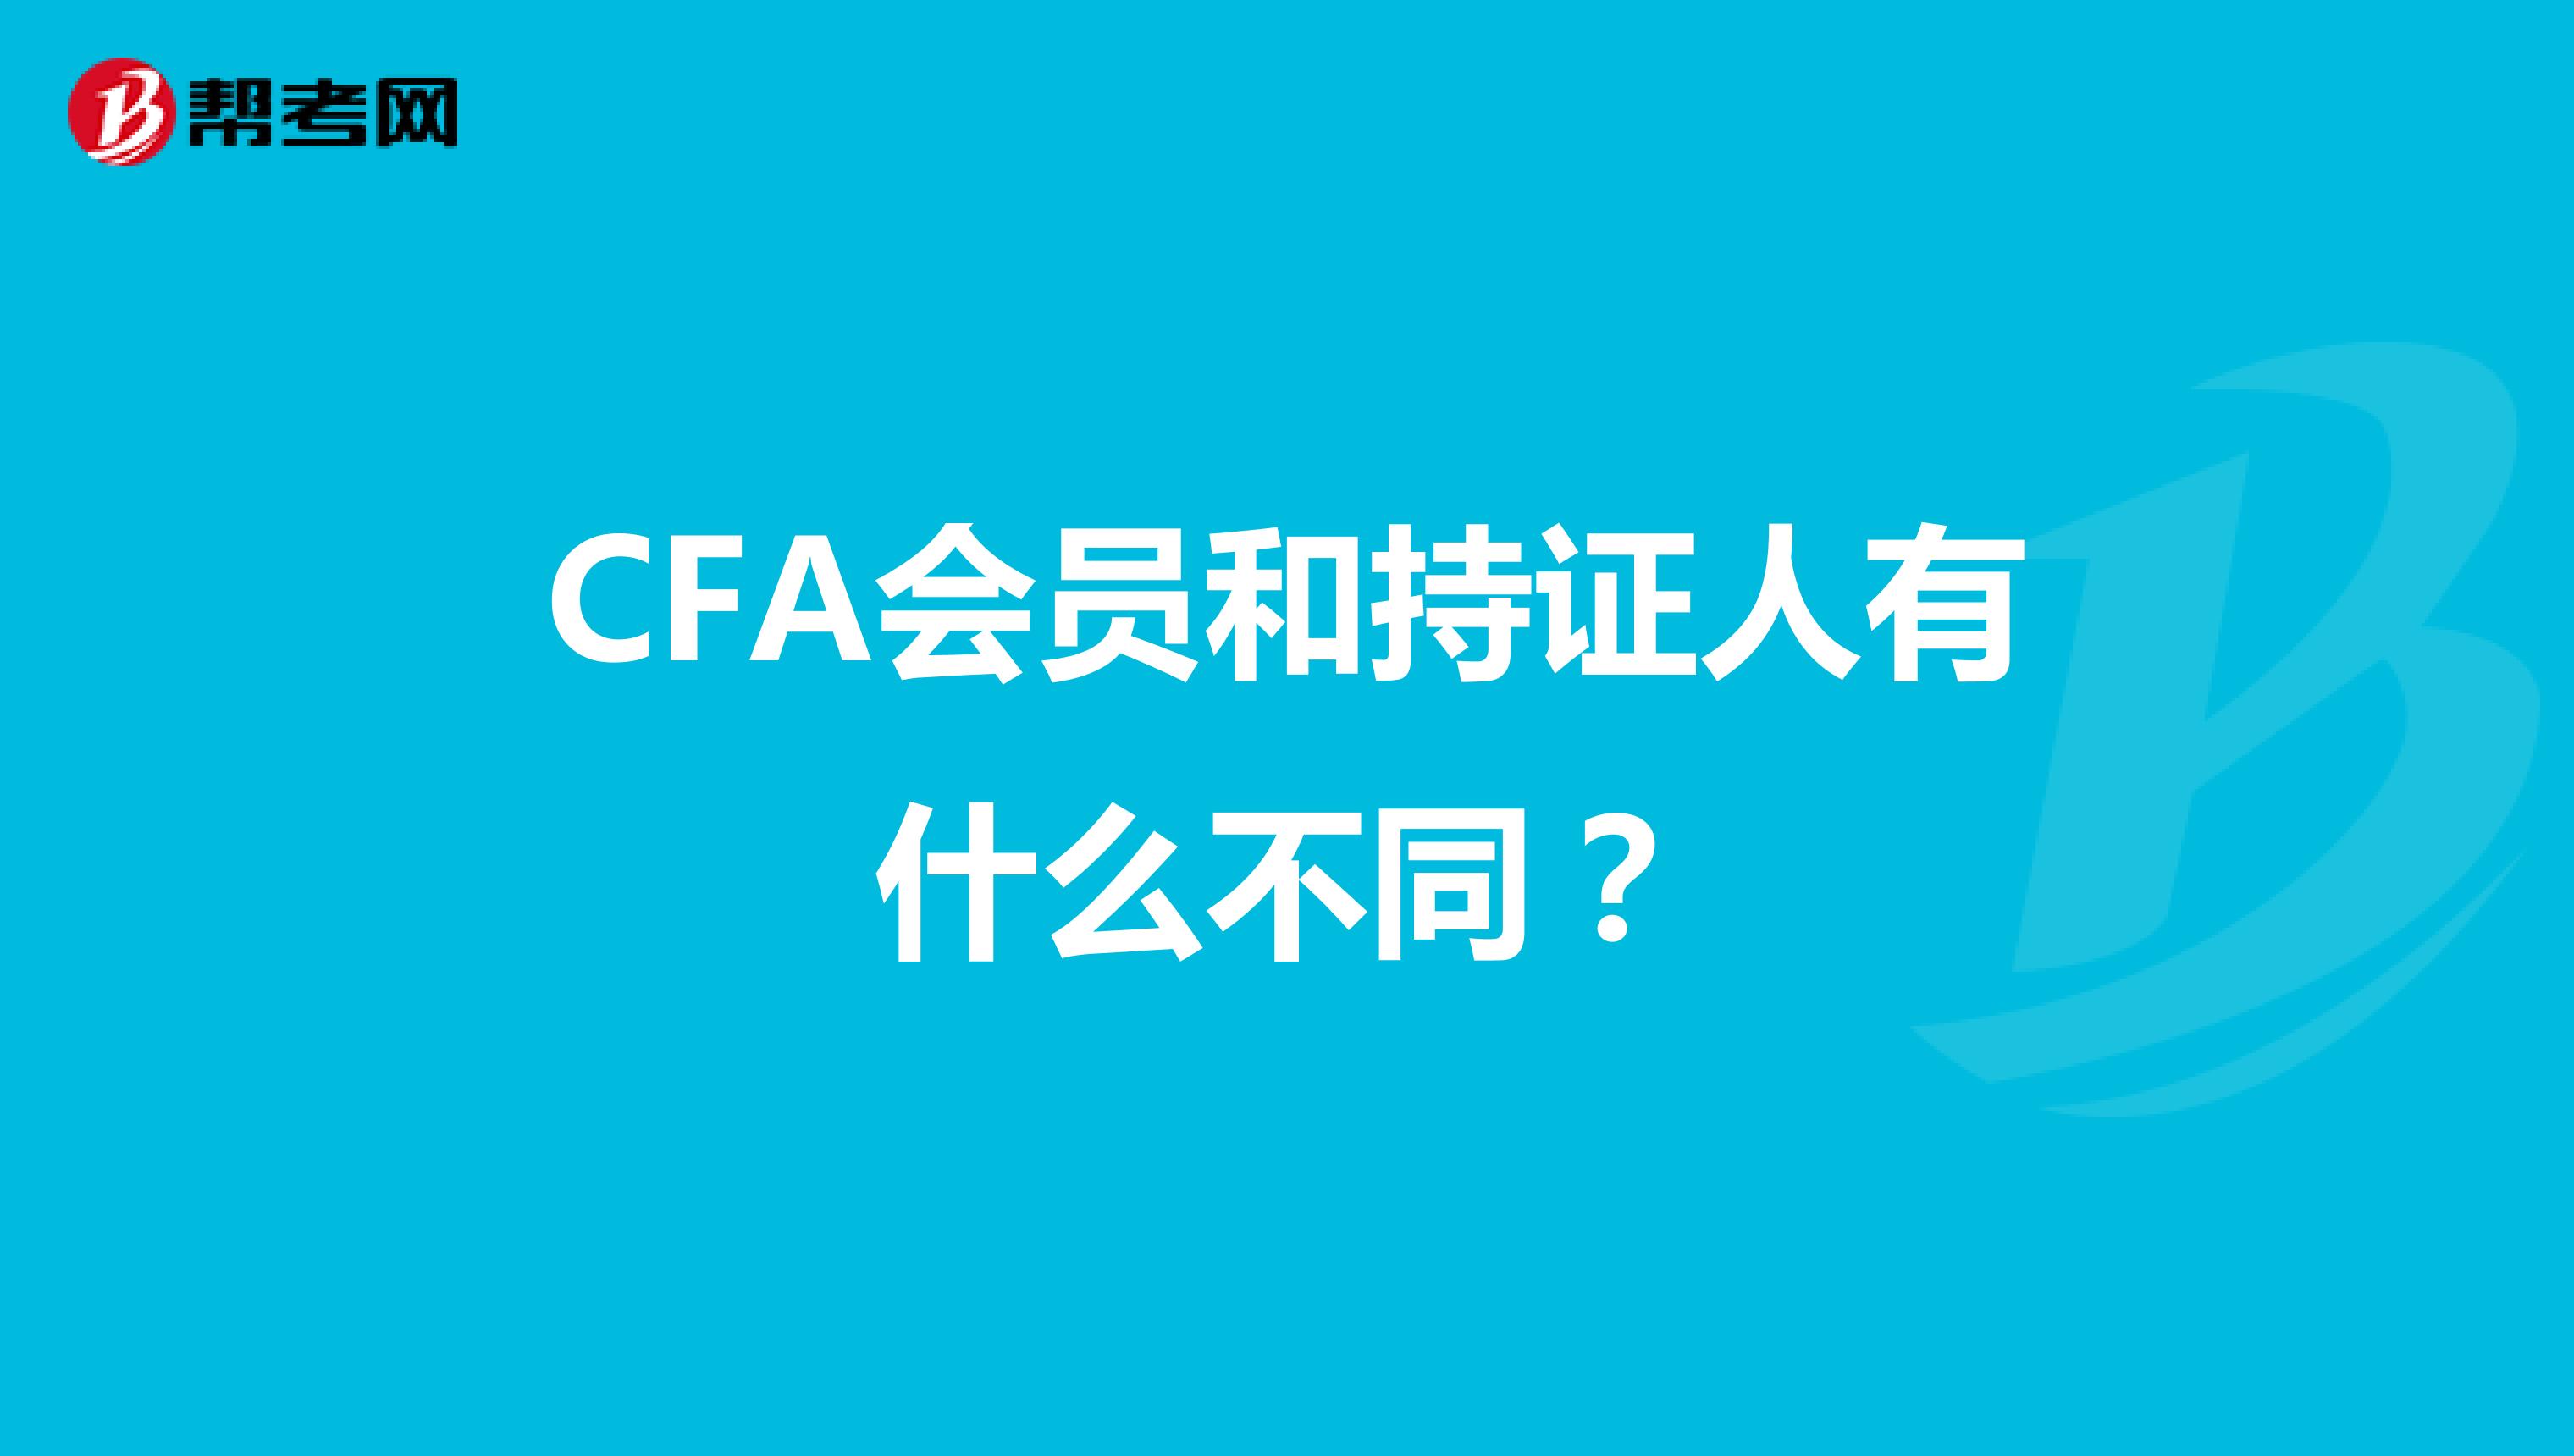 CFA会员和持证人有什么不同？